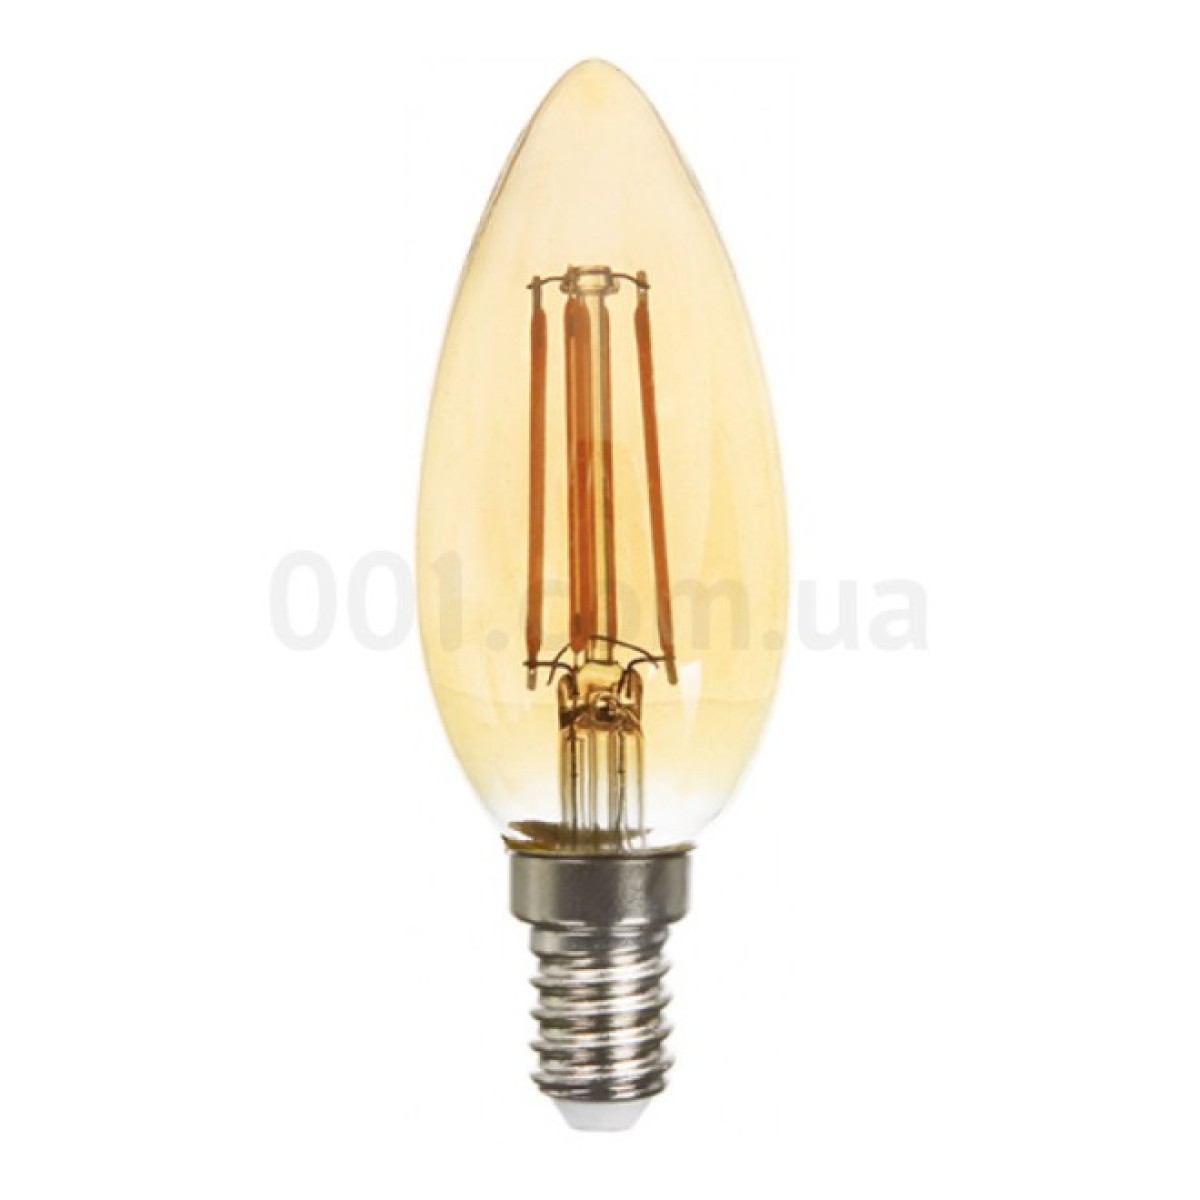 Світлодіодна лампа LB-158 C37 (свічка) філамент золото 6Вт 2200K E14, Feron 256_256.jpg